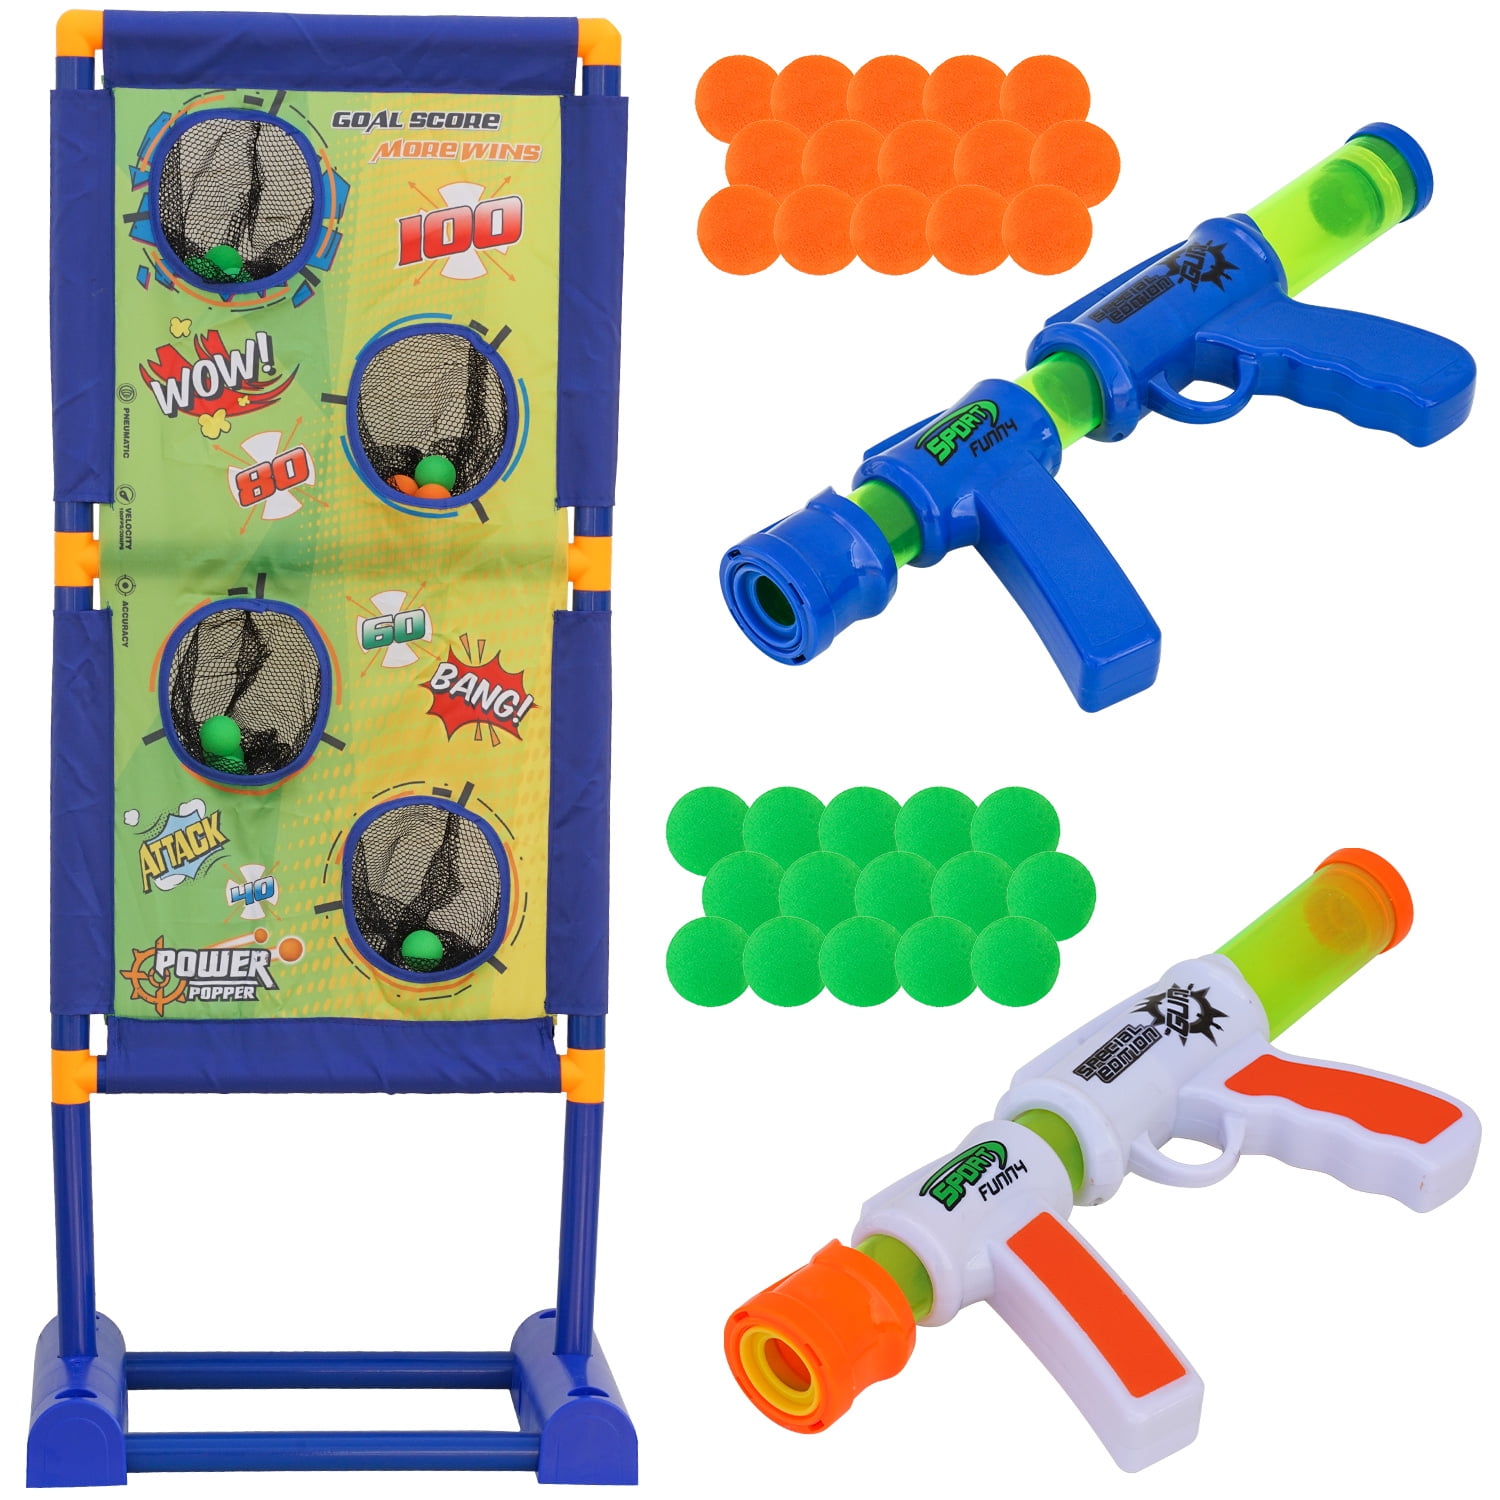 Moving Shooting Target Electric Digital Scoring Target for Toy Gun Kids Game 